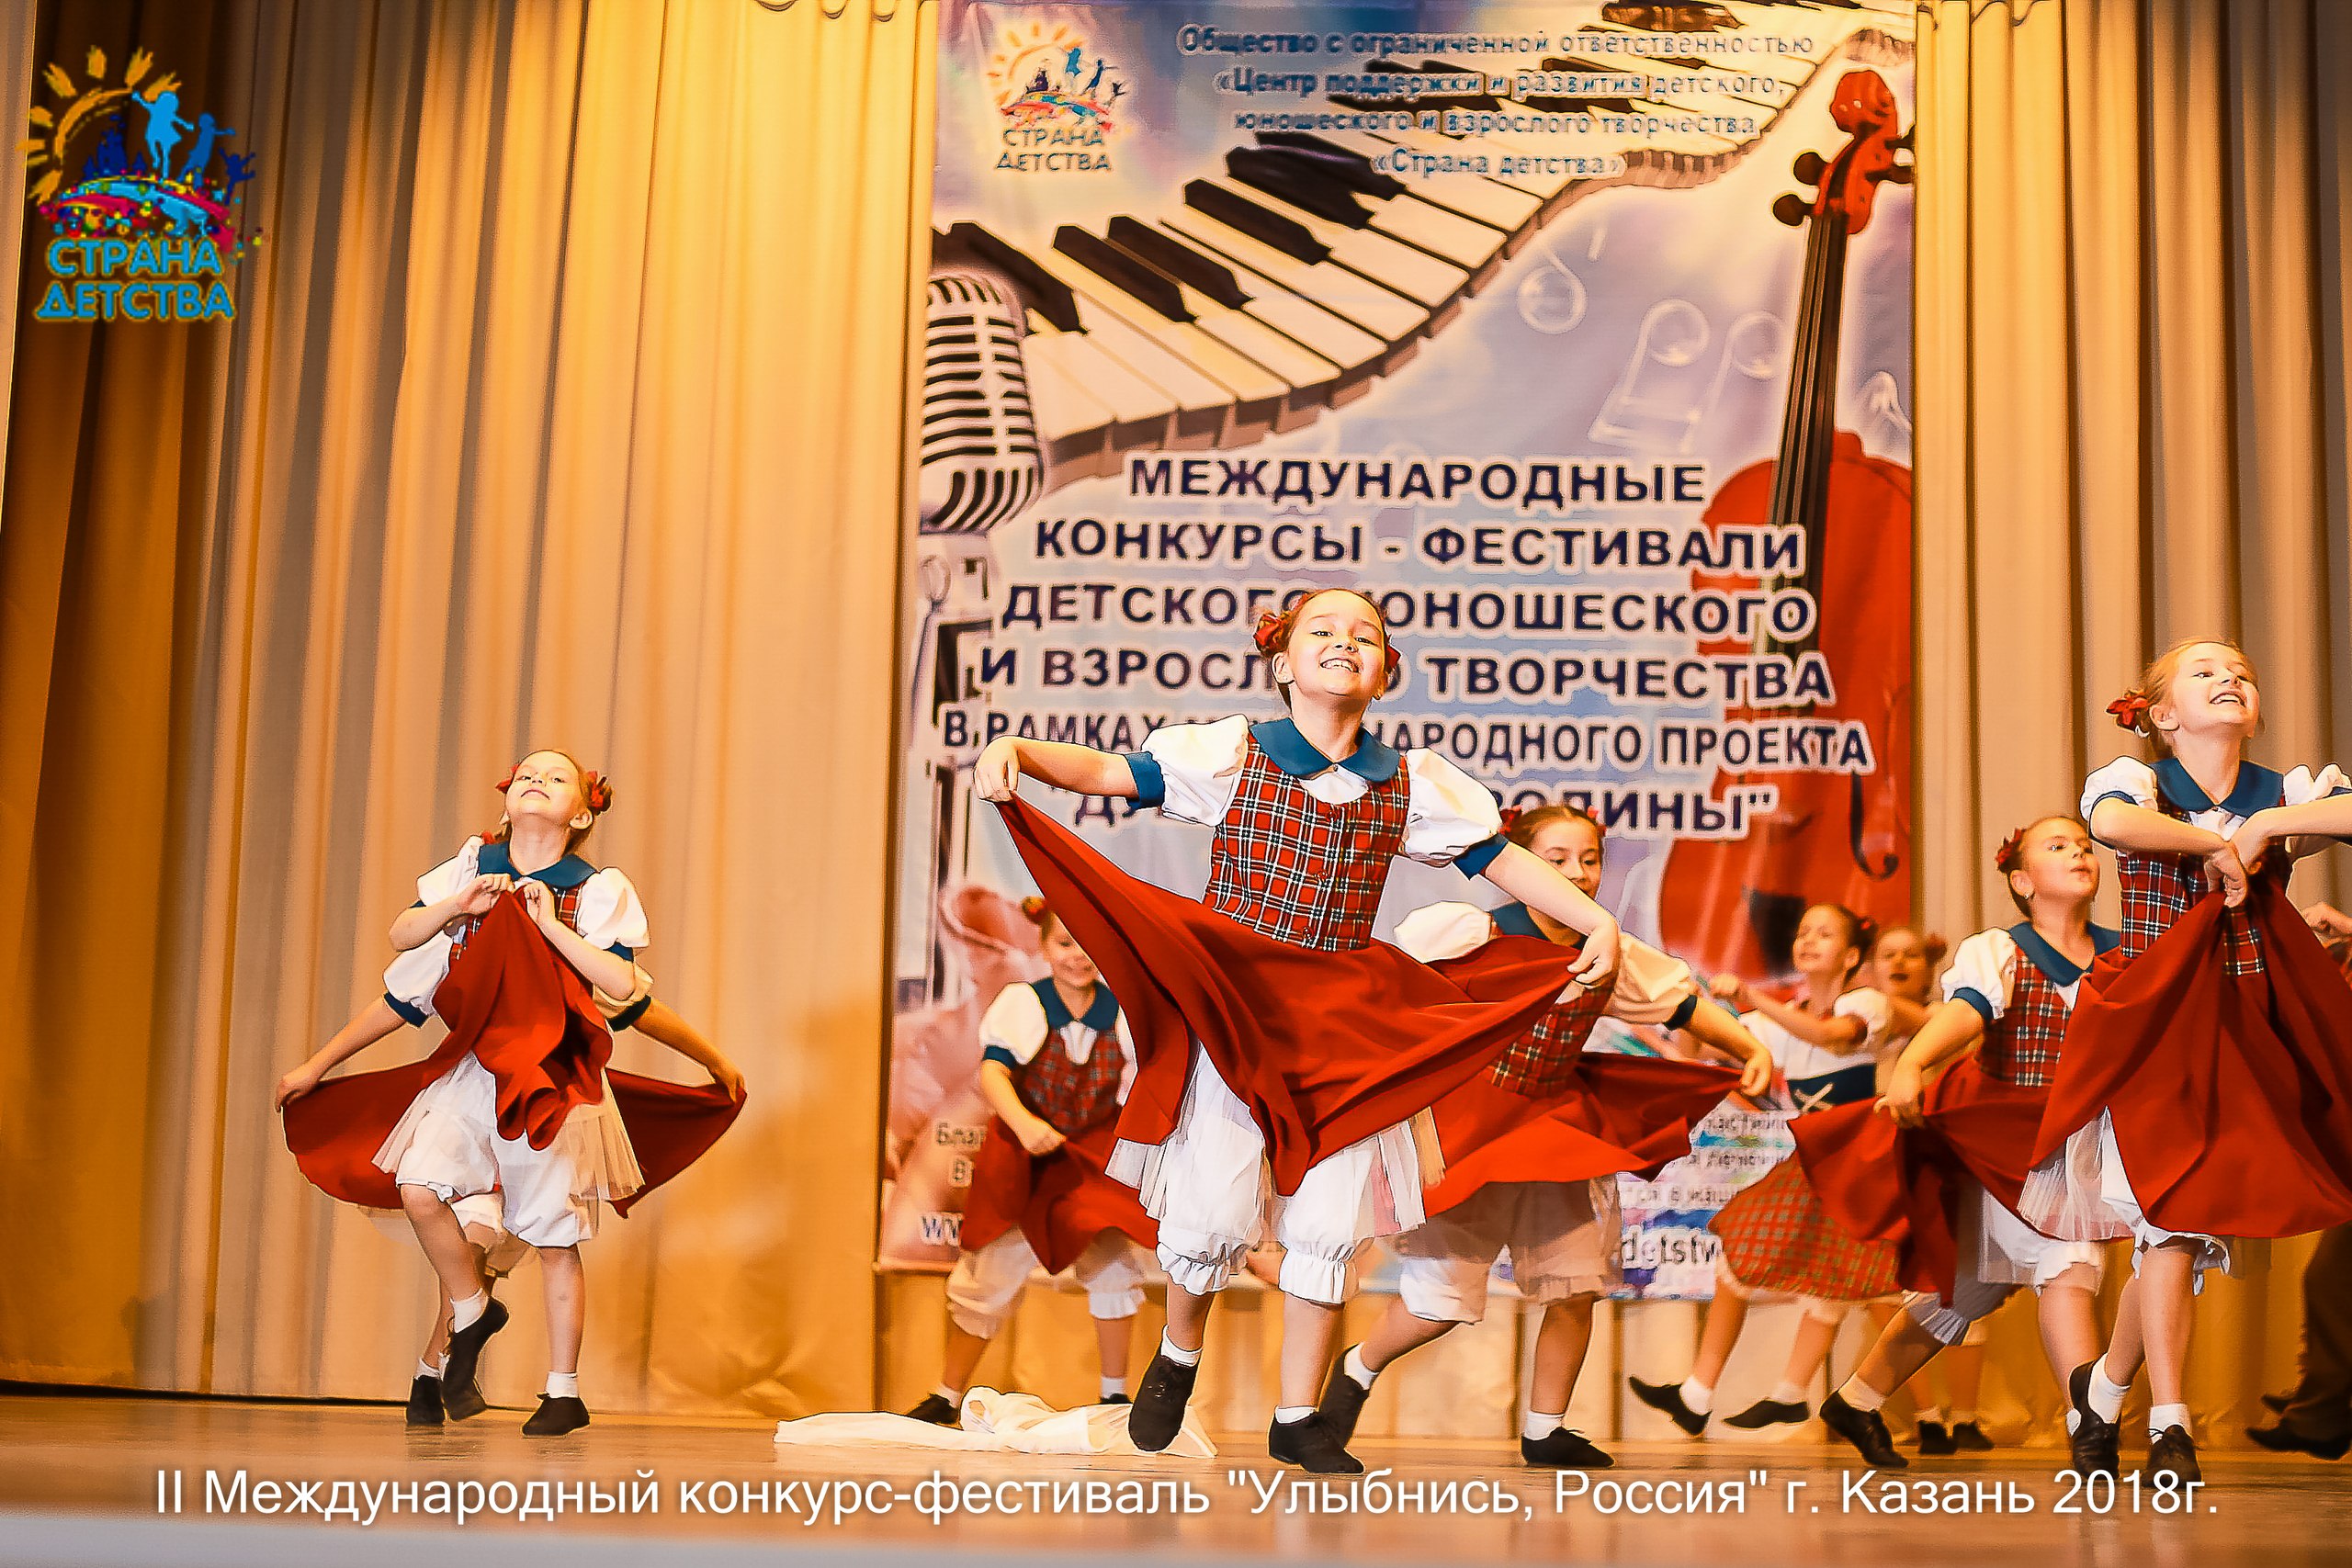 Вот и прошёл 28 апреля 2018г в столице Татарстана городе Казани II Международный конкурс-фестиваль детского, юношеского и взрослого творчества 